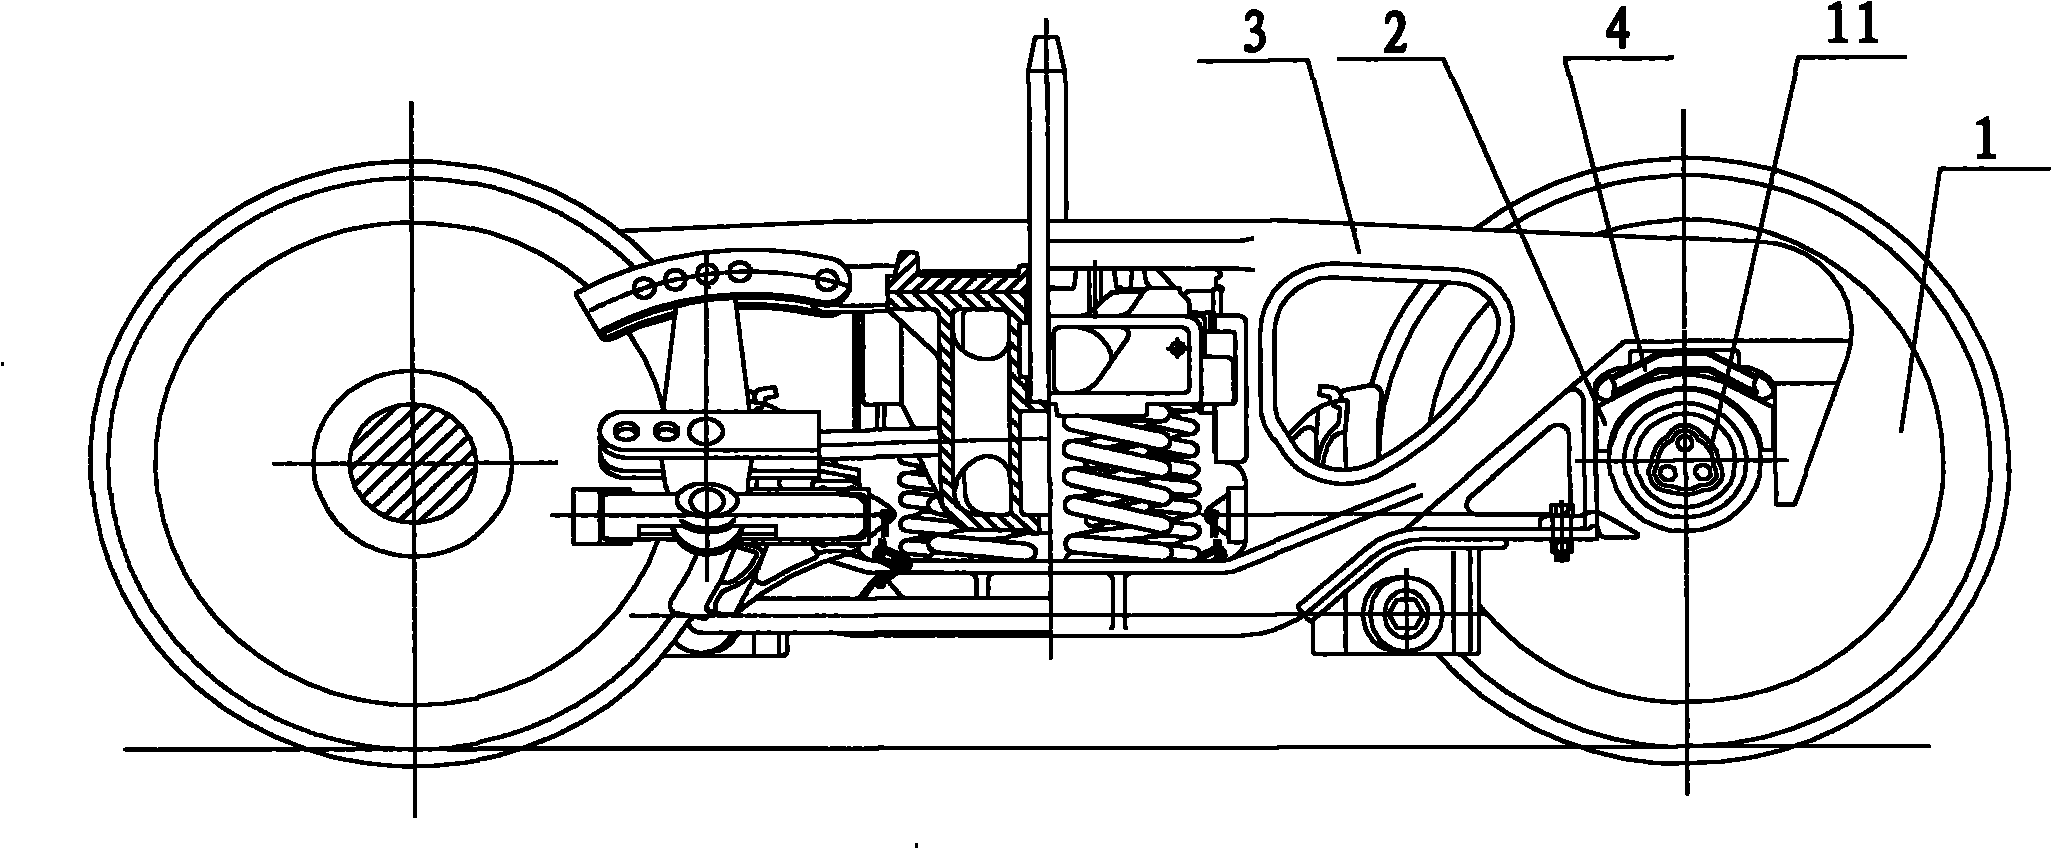 Bogie of railway vehicle and railway vehicle